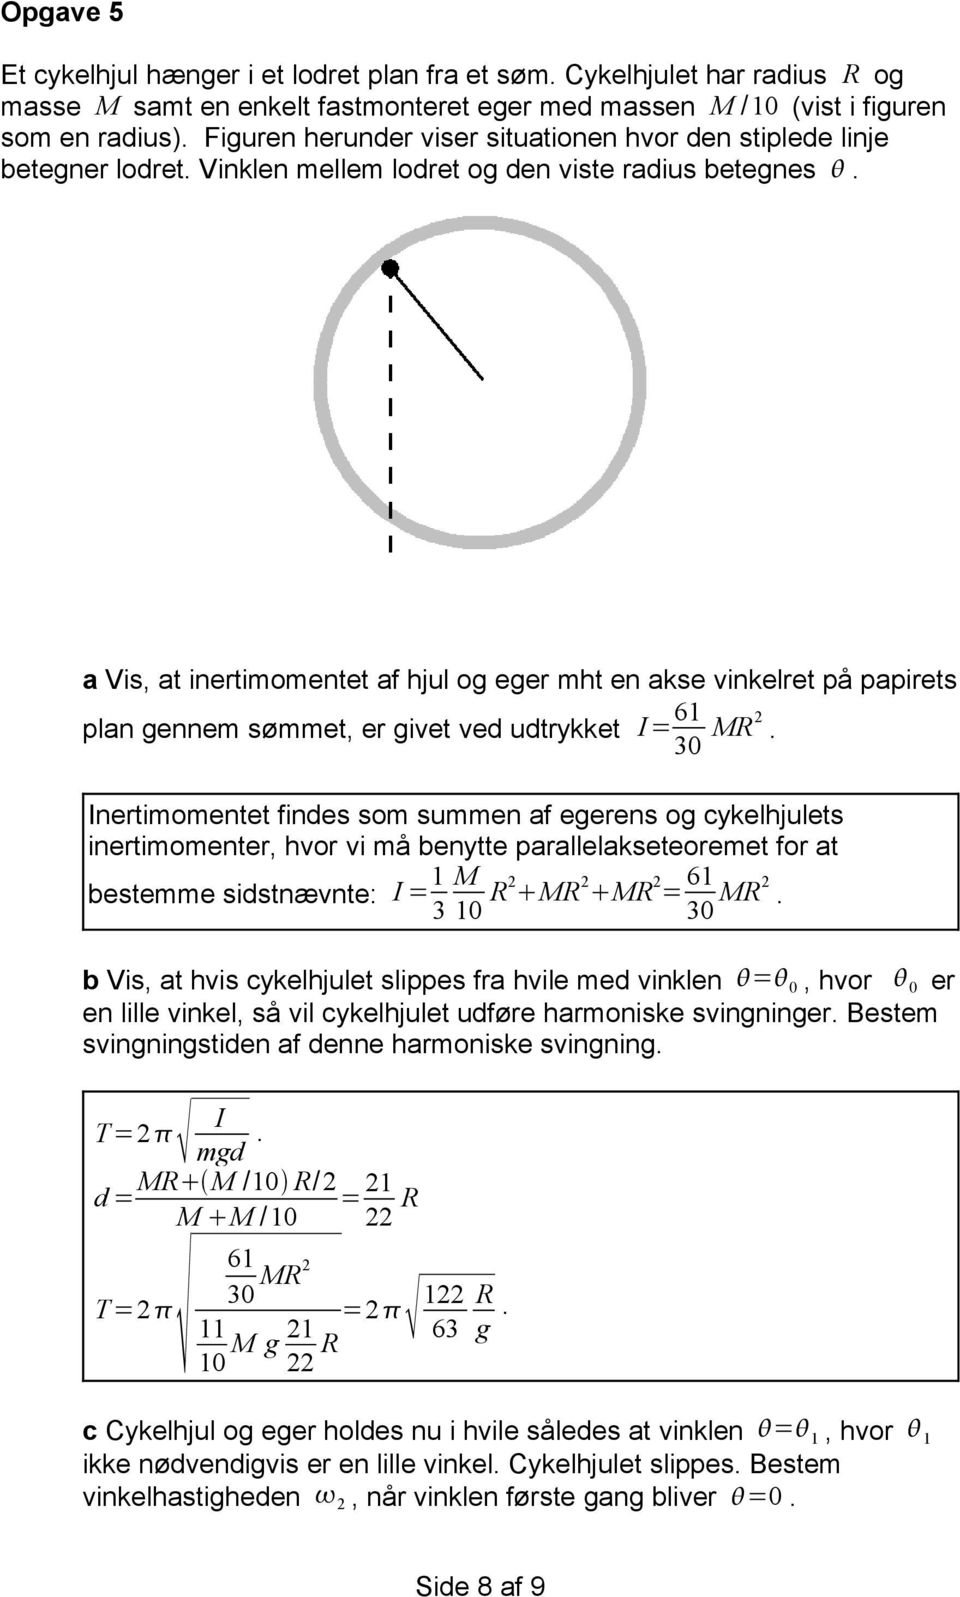 a Vis, at inertimomentet af hjul og eger mht en akse vinkelret på papirets plan gennem sømmet, er givet ved udtrykket I= 61 30 MR2.